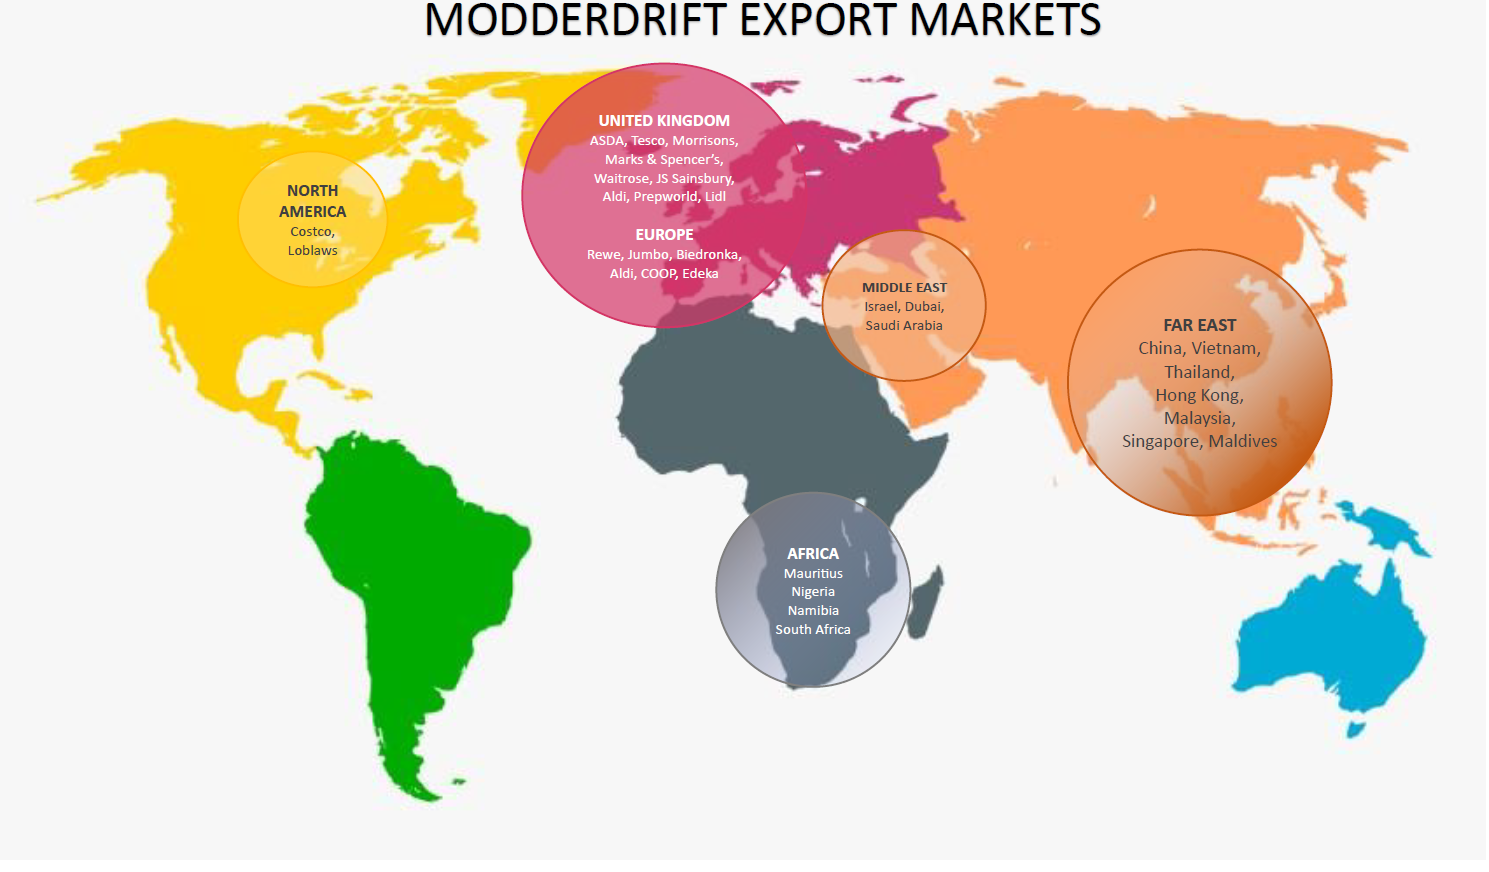 Modderdrift Export Markets 2023